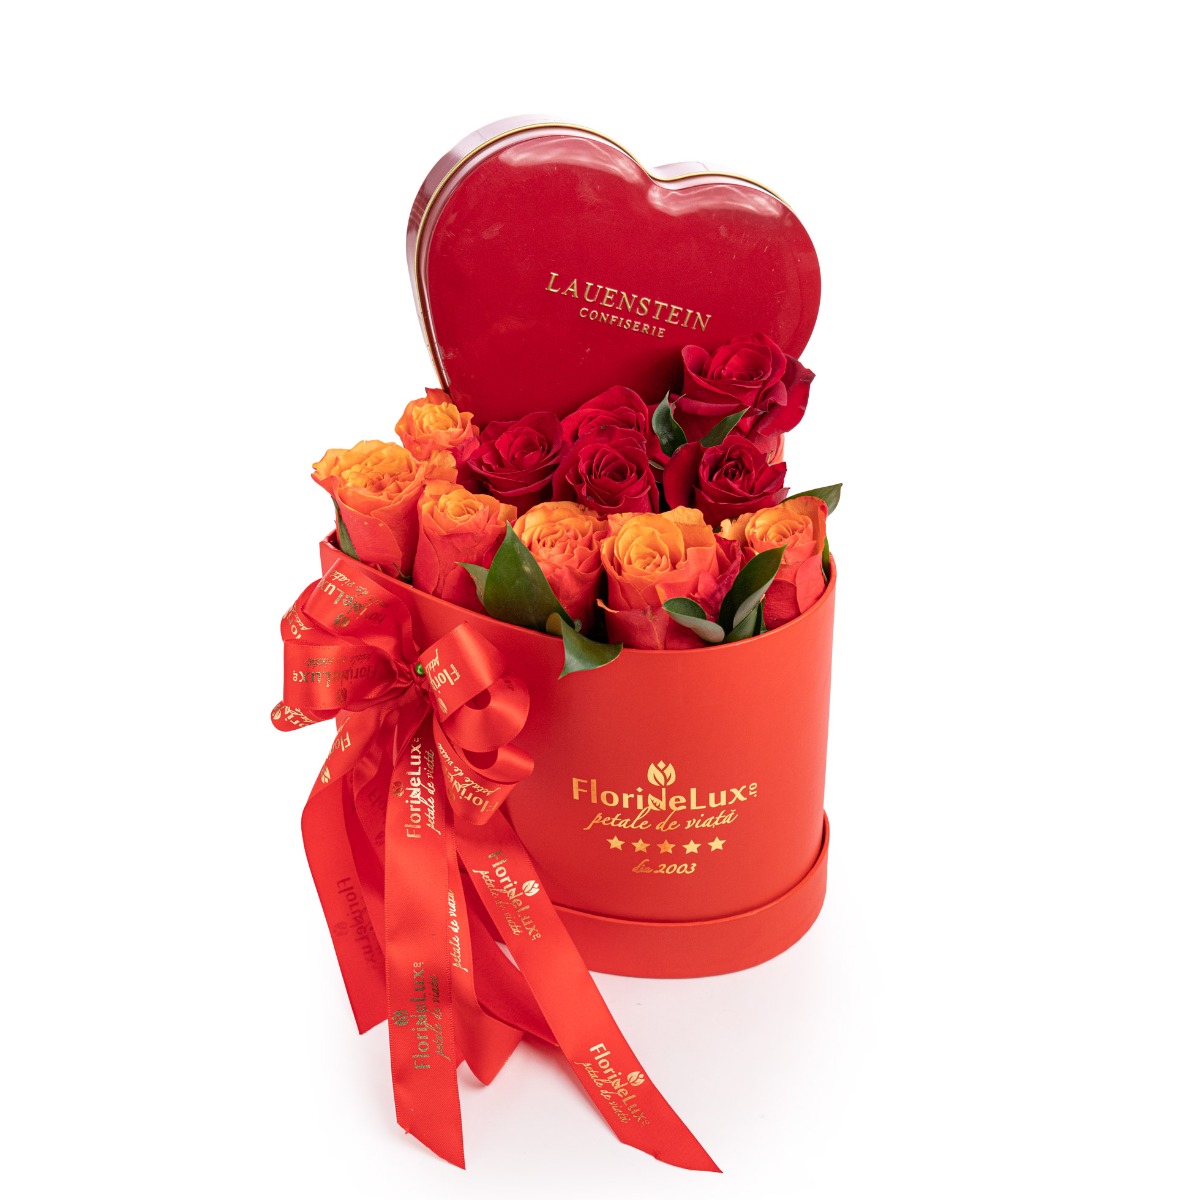 Cutie inima cu trandafiri si ciocolata premium-Standard